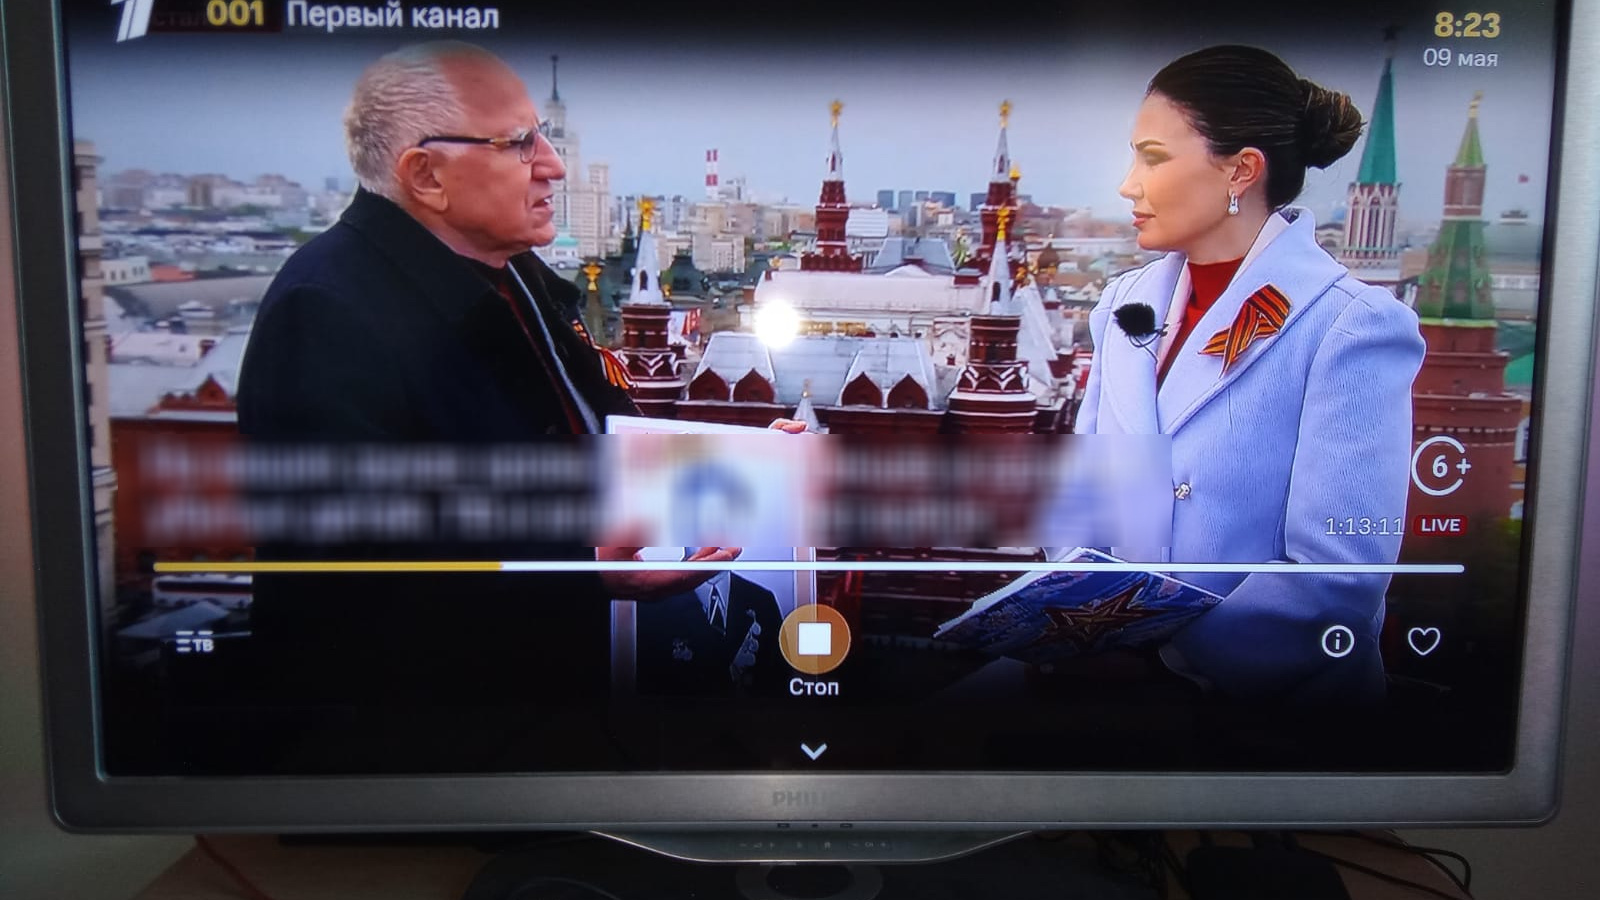 Хакеры взломали спутниковое телевидение в России